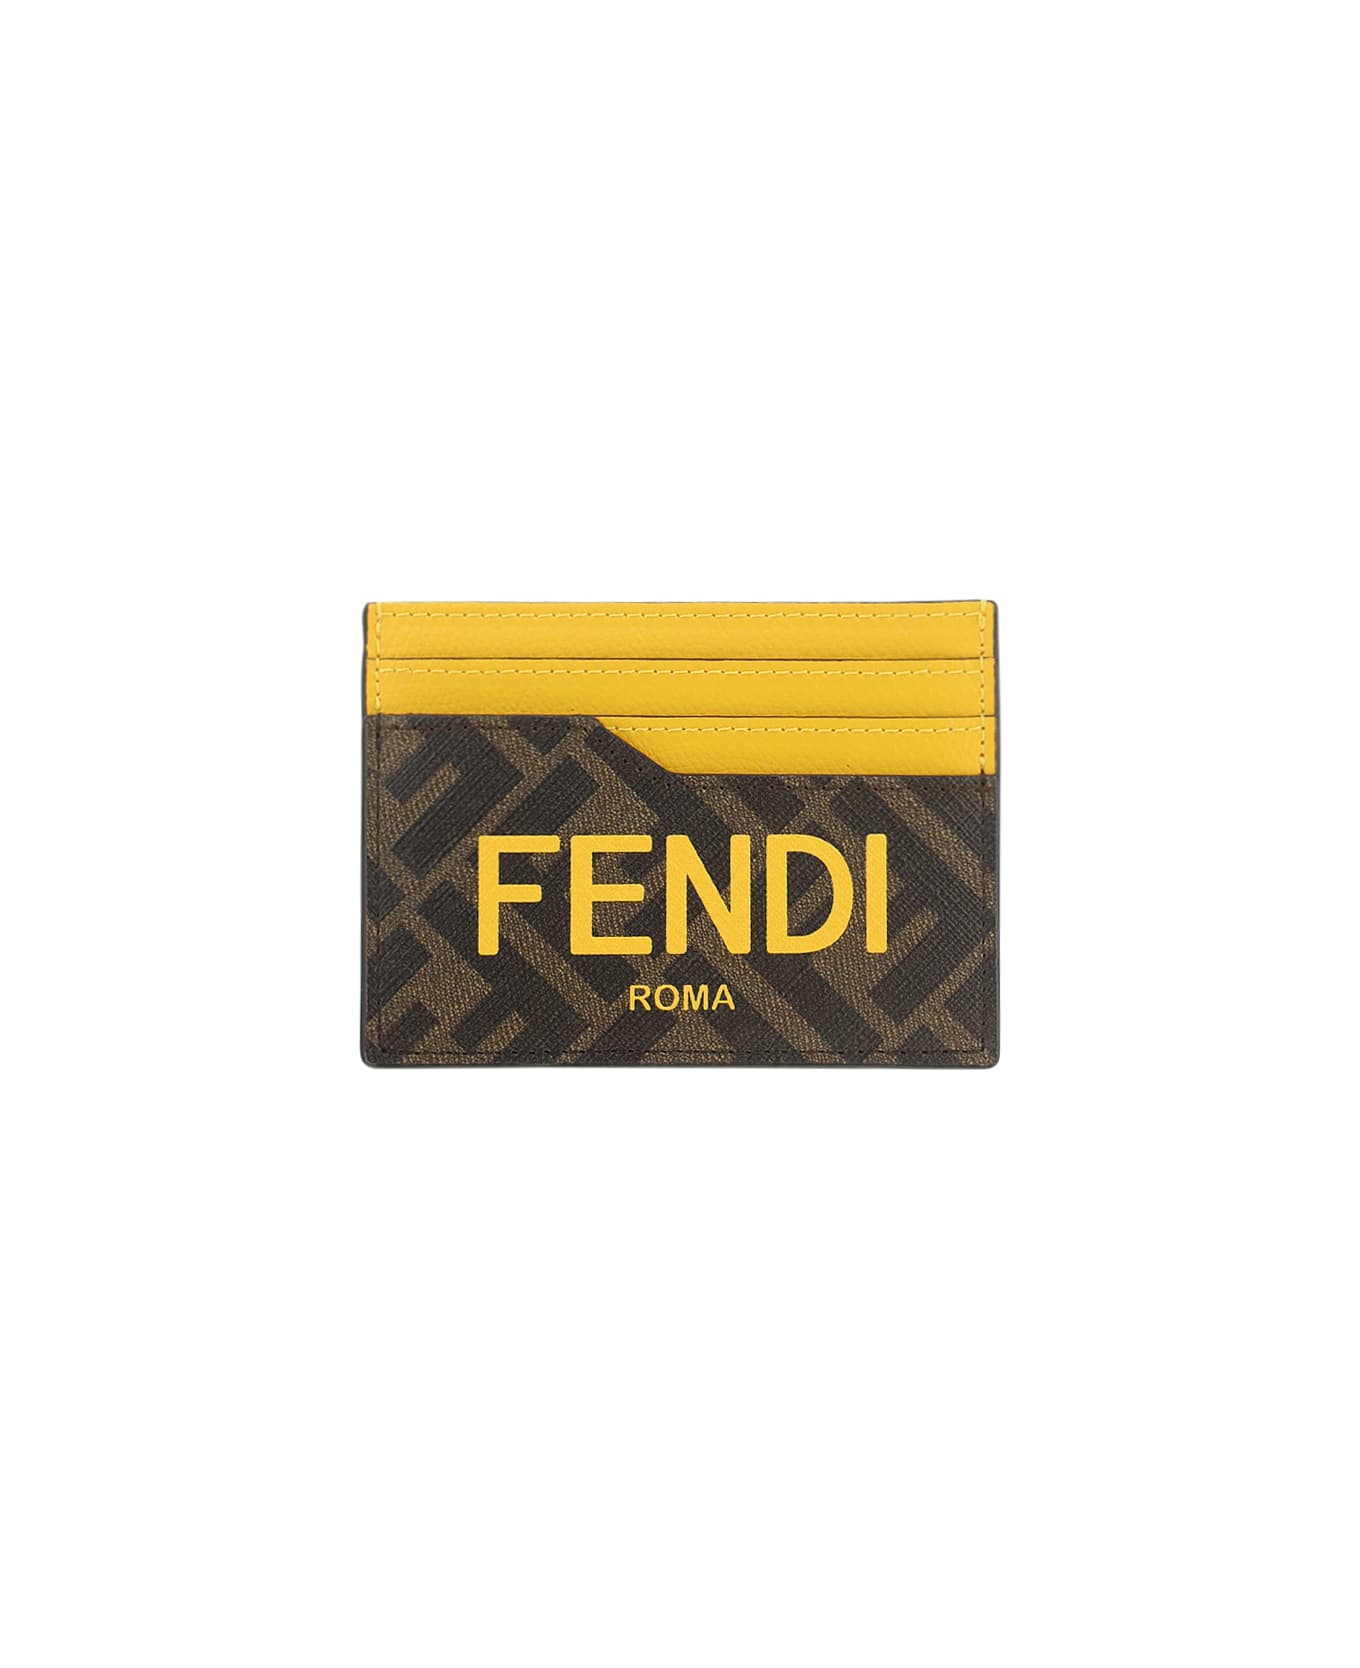 Fendi Ff Card Holder - Tbmr/giallo/sunfl 財布